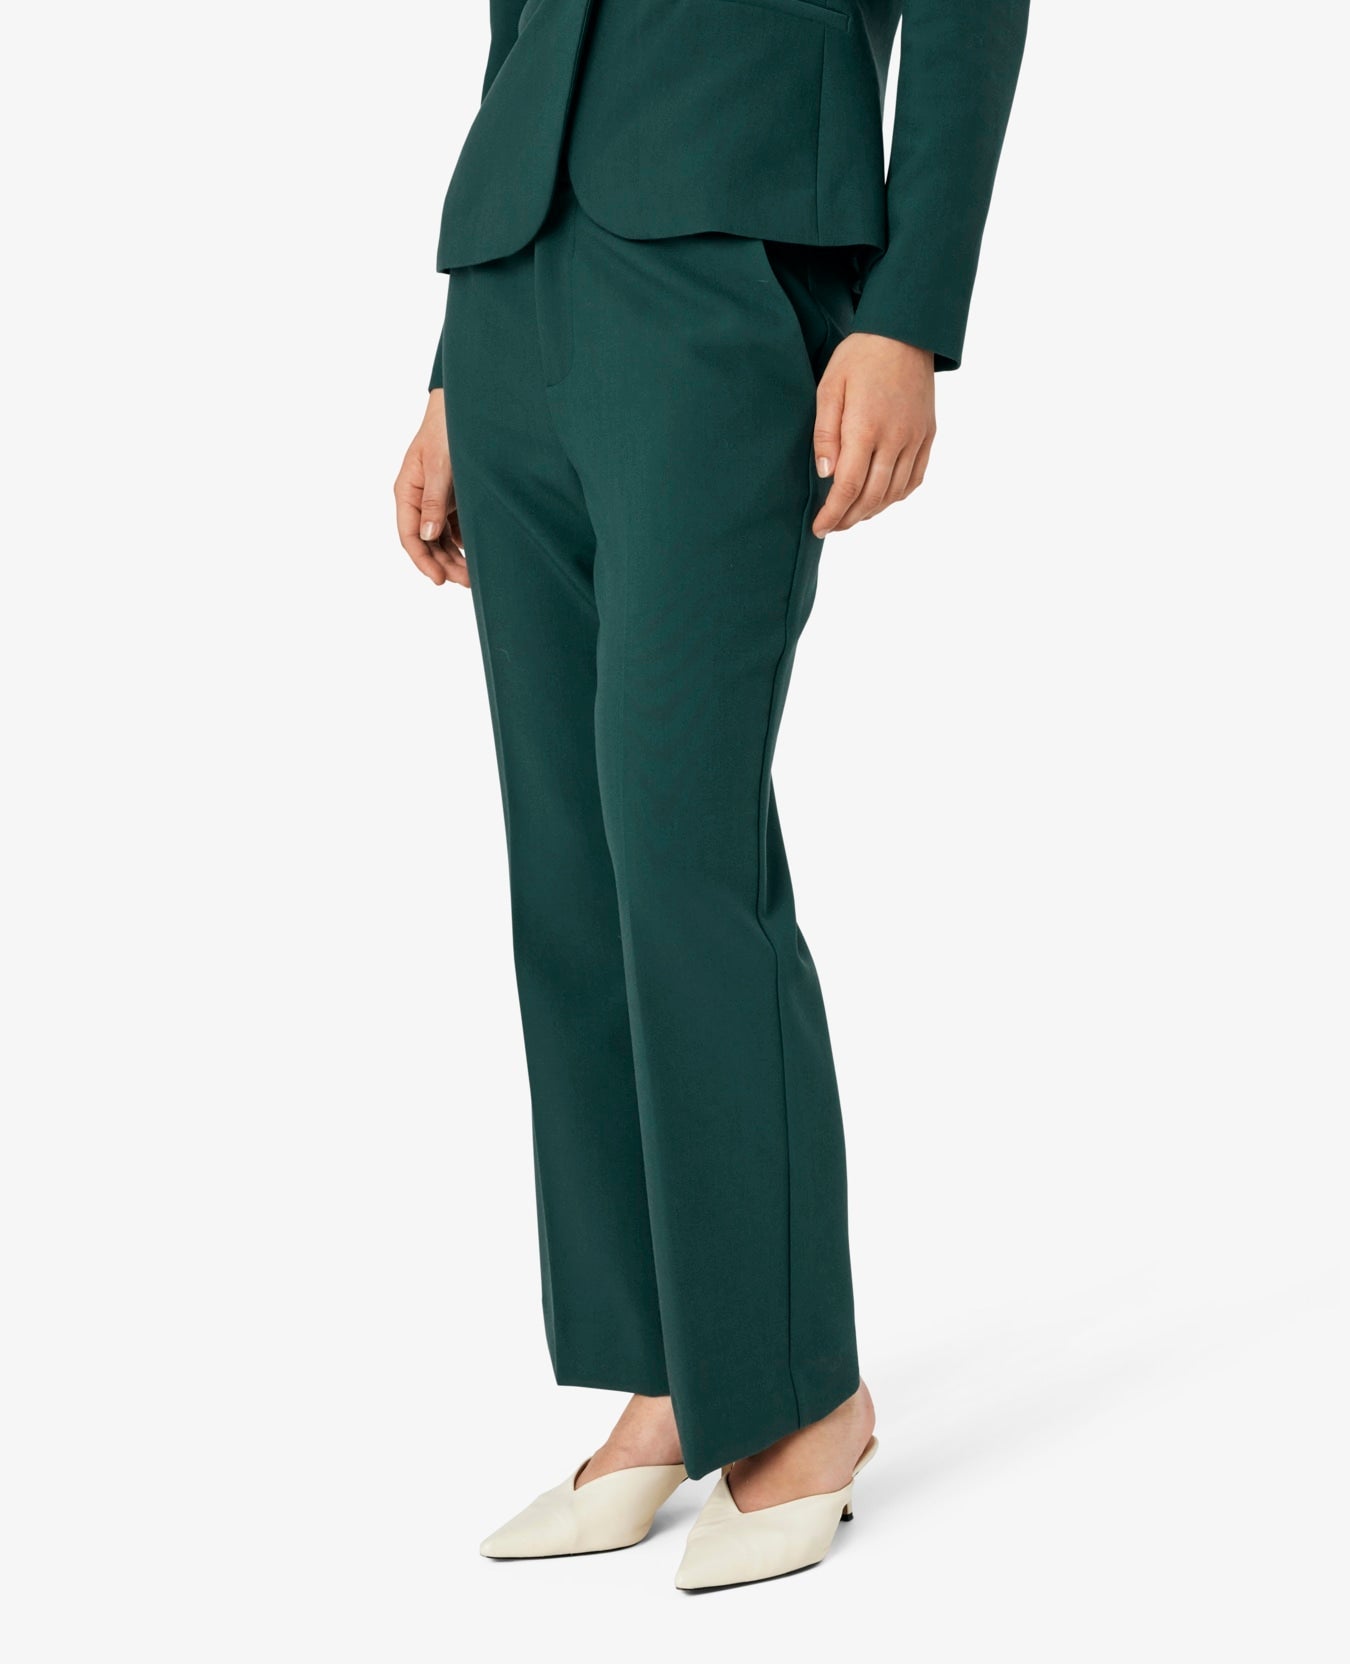 Noa Noa Felicia Suit Pants - Green